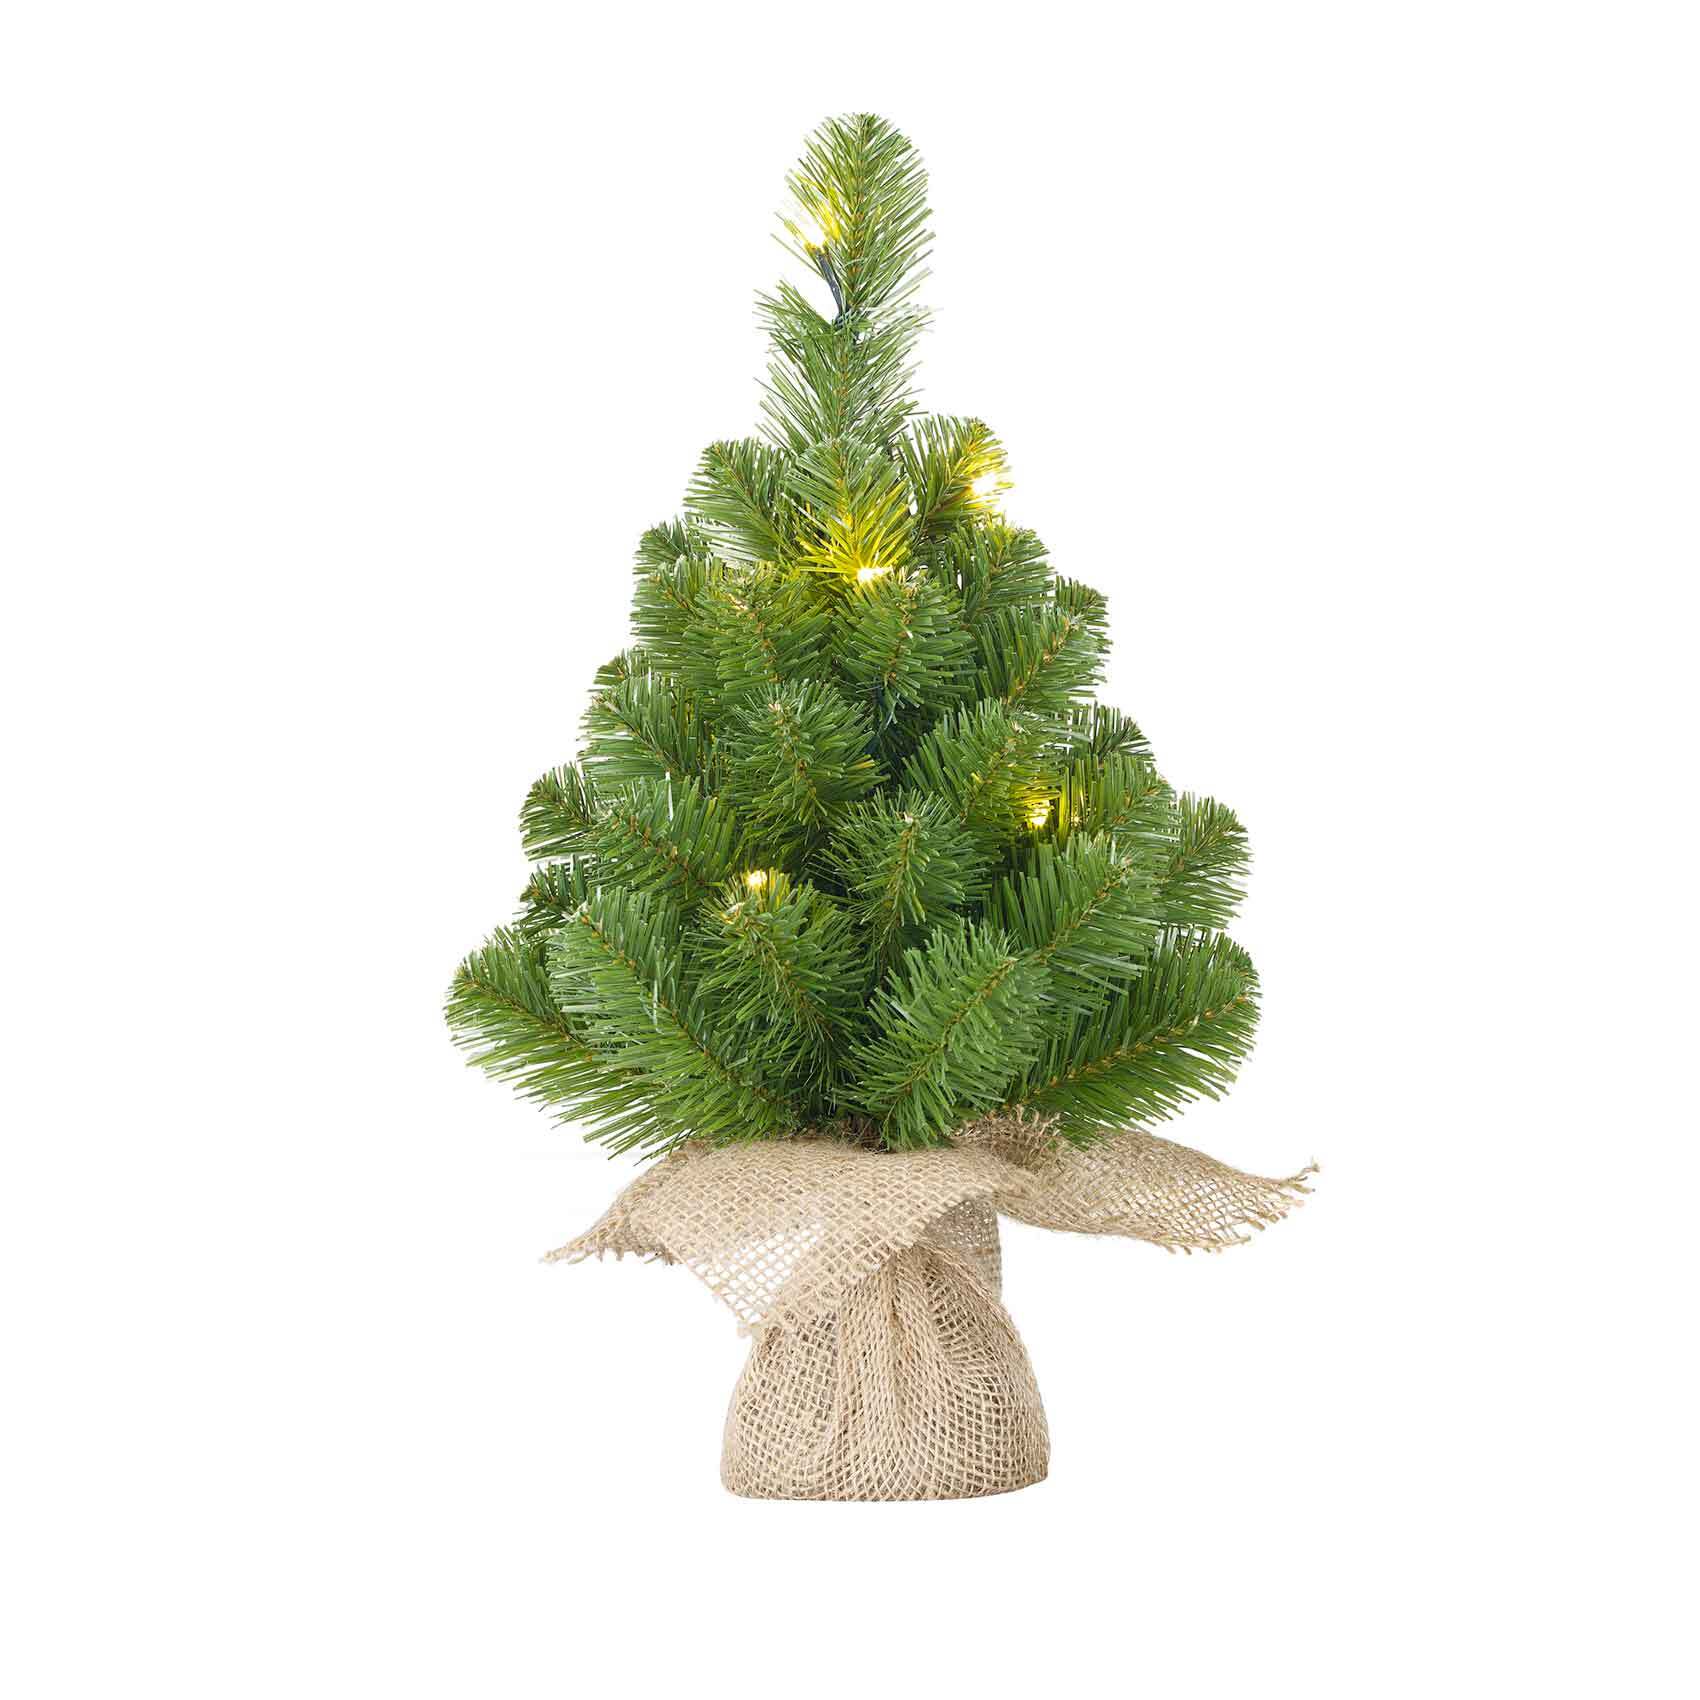 Blackbox norton kerstboom met led met jute groen 10 lampjes met warmwit led maat in cm: 45 x 20